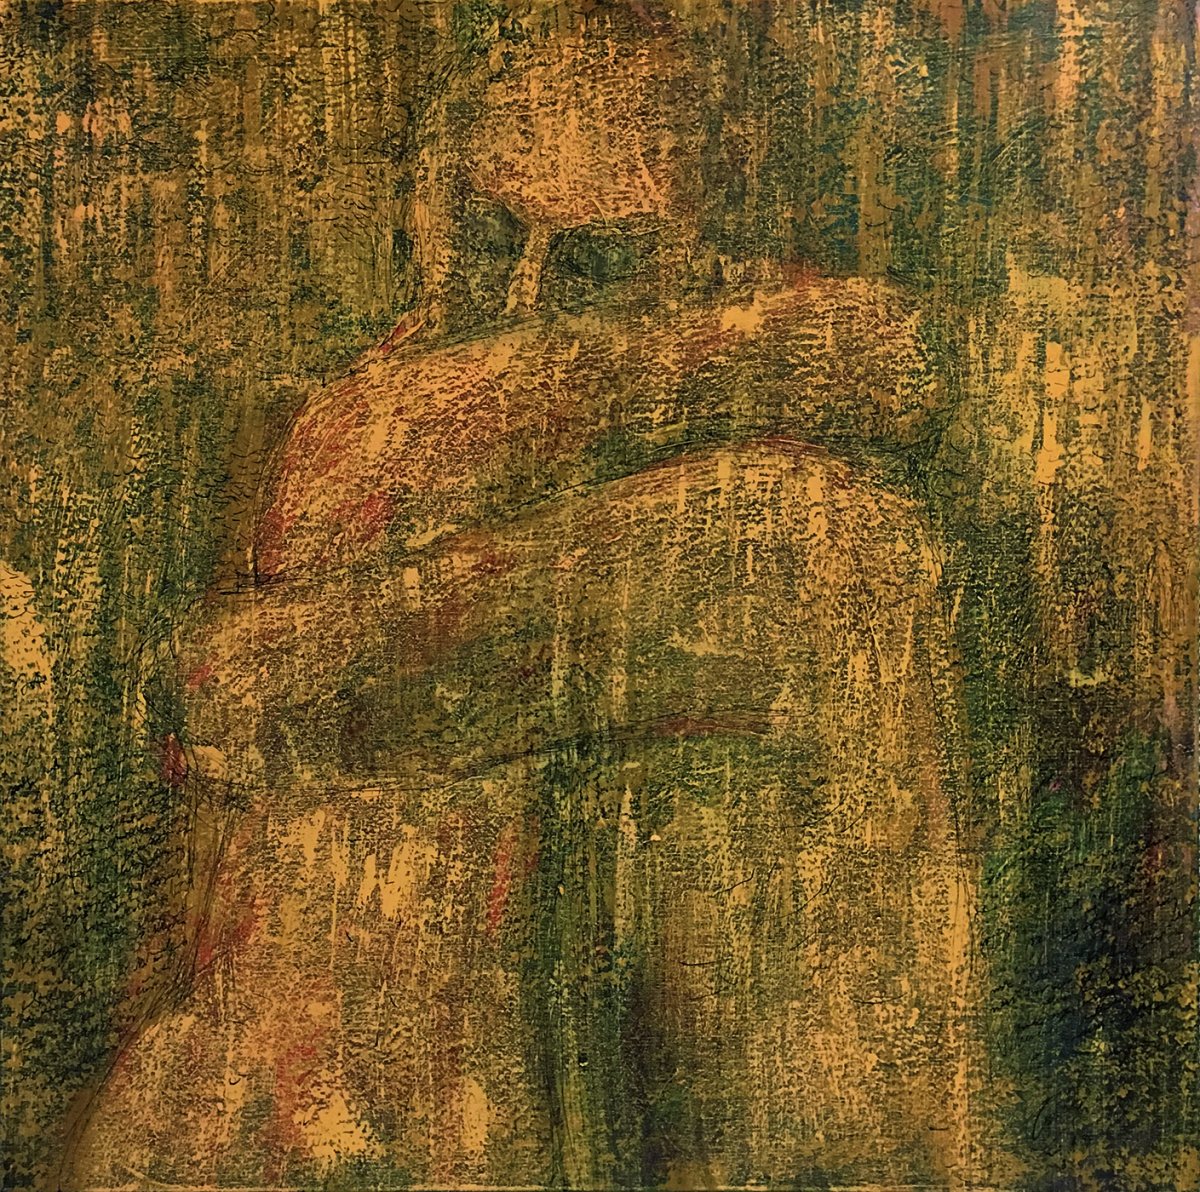 Csillag István - Igen (80 x 80 cm, 2018, akril, tus, vászon) 